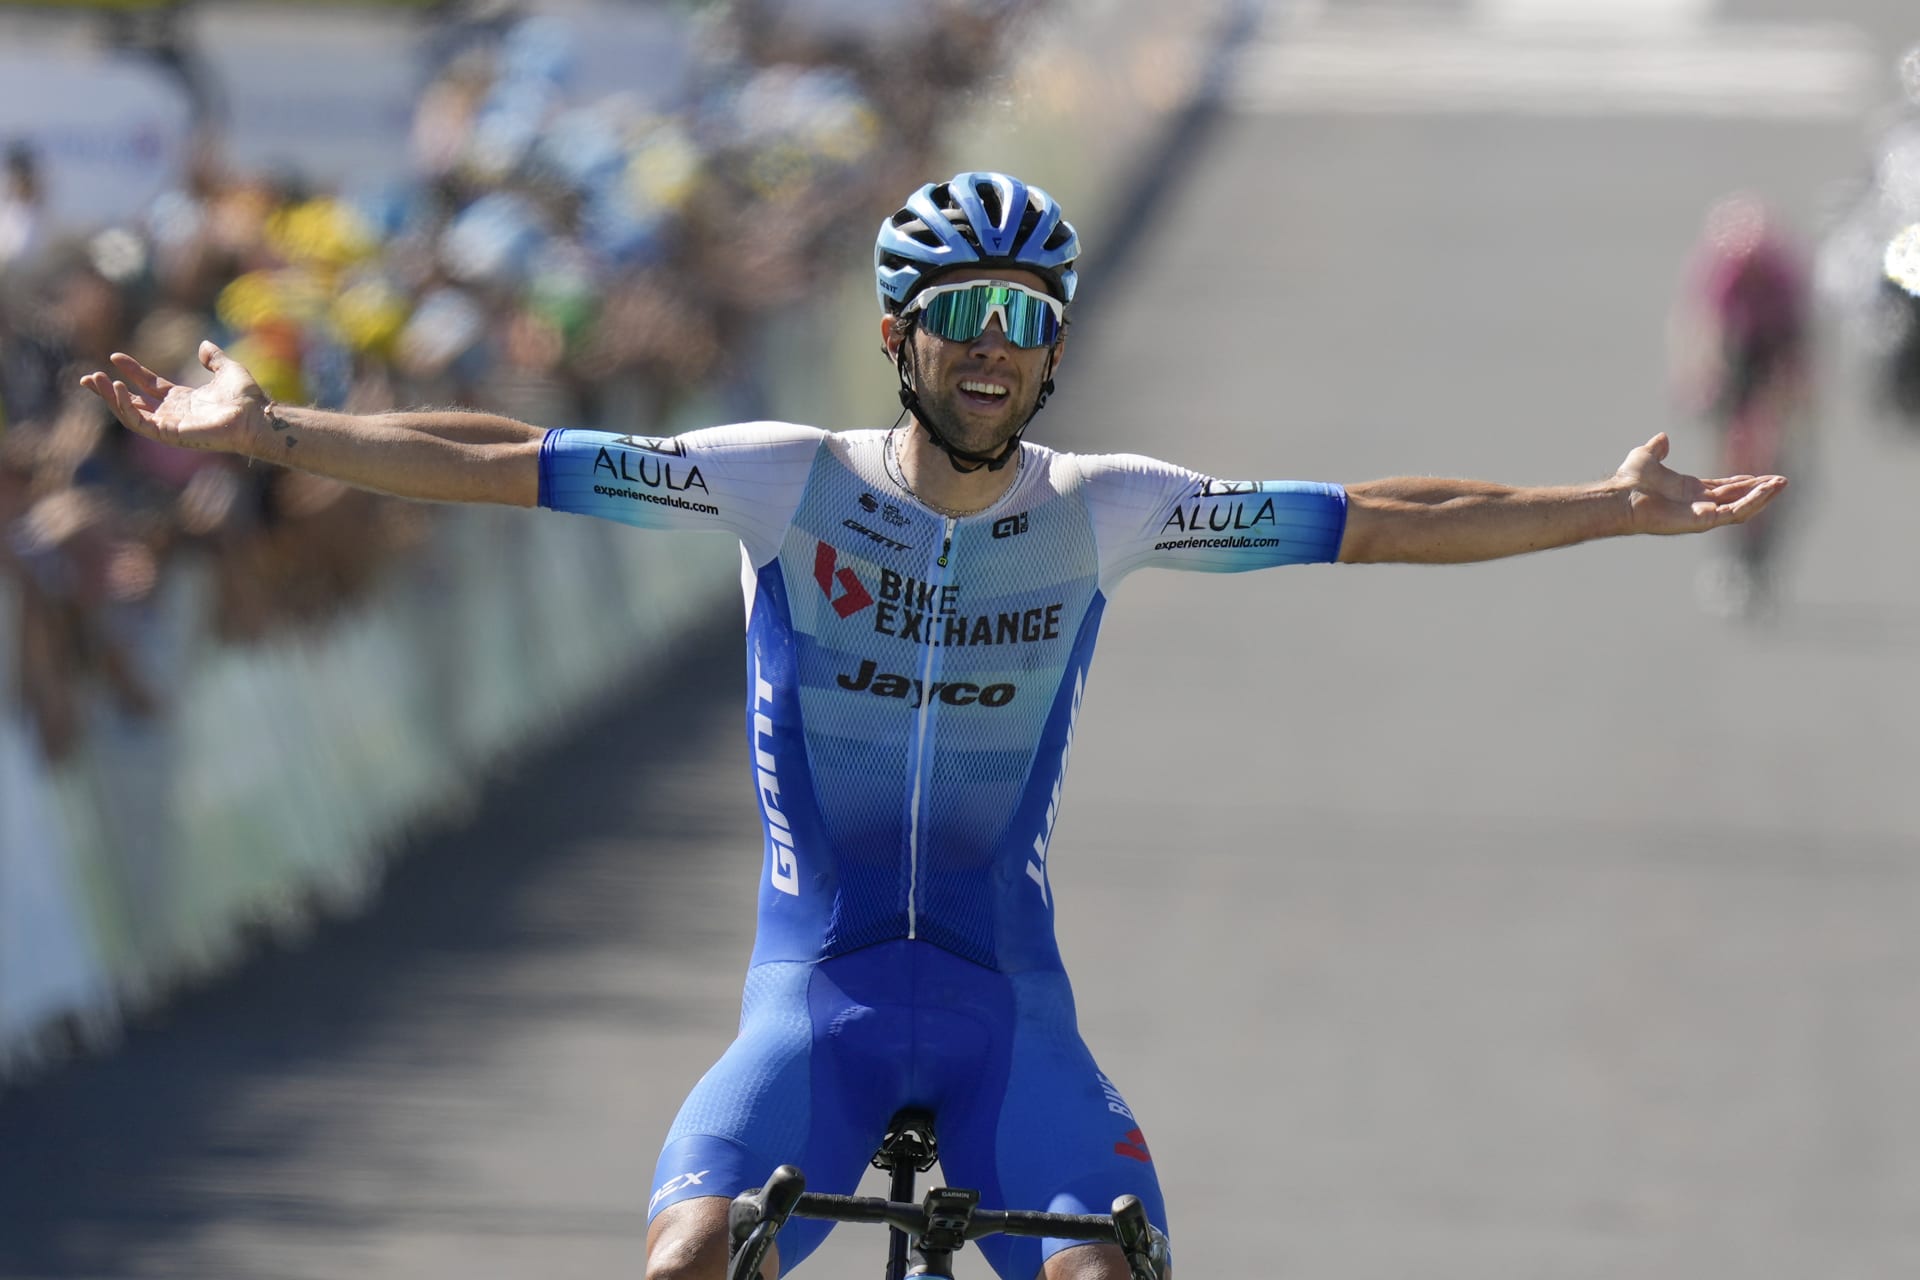 Čtrnáctou etapu Tour de France vyhrál po útoku v náročném závěrečném stoupání v Mende Michael Matthews. 